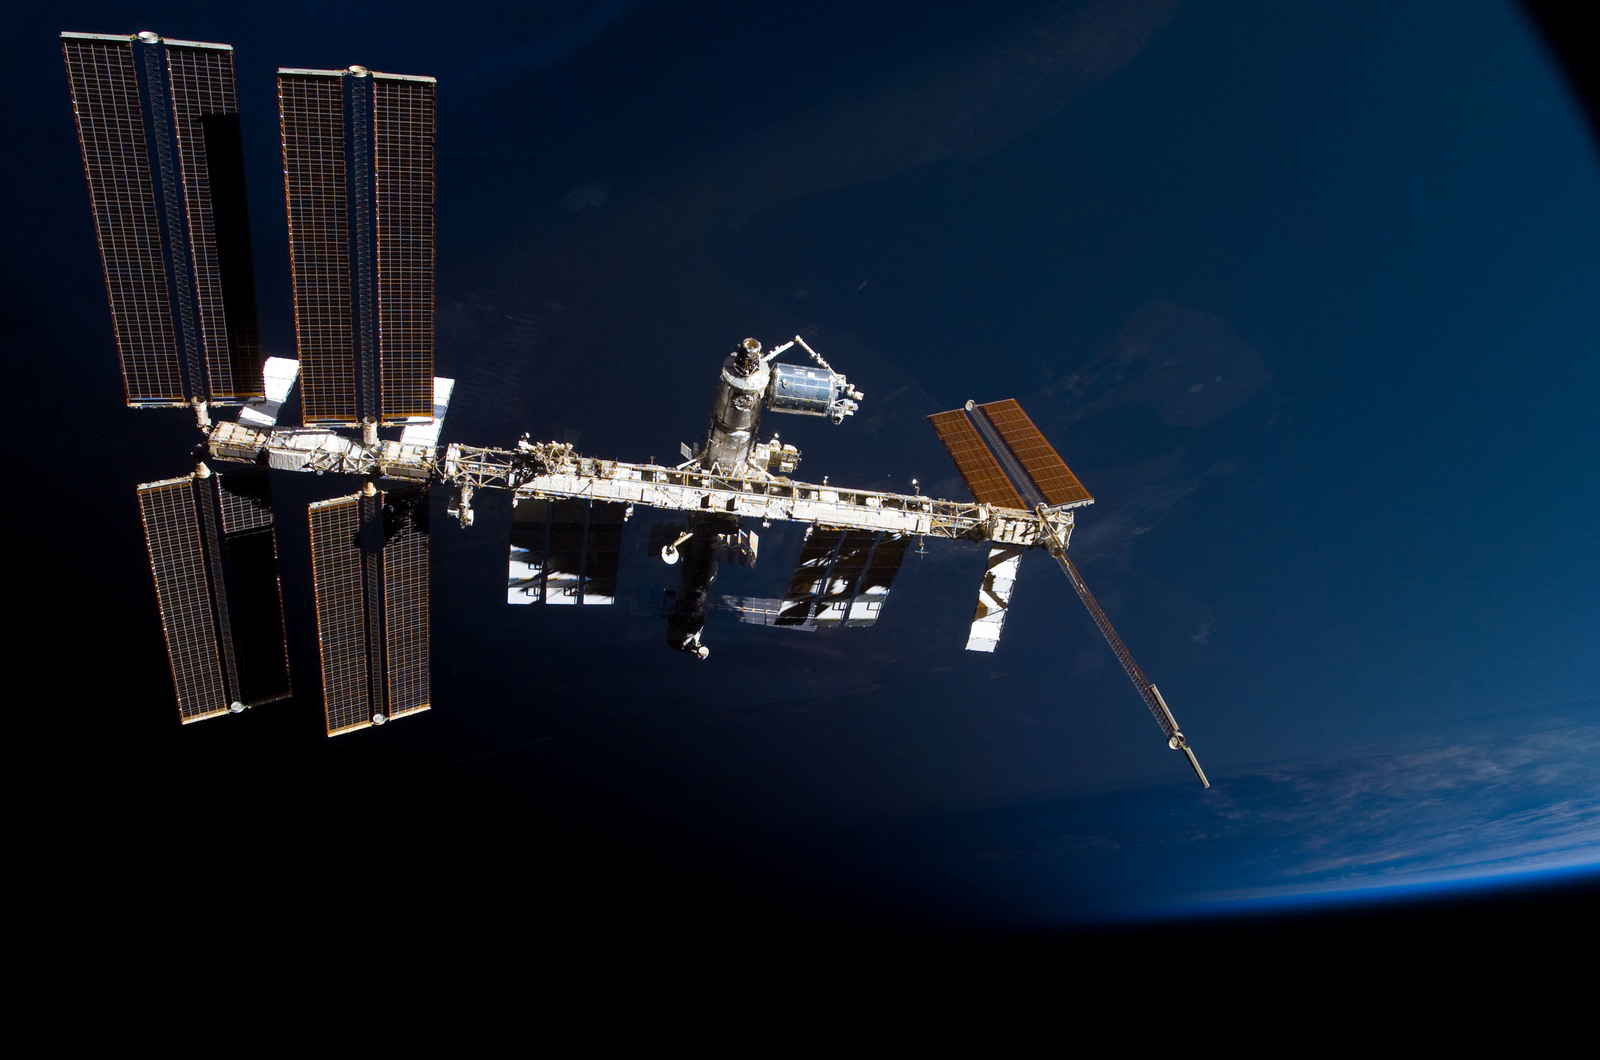 Самый большой космический аппарат. Космическая станция МКС. Спутник НАСА станция МКС. Космическая орбитальная станция мир. Атлантис космический аппарат.